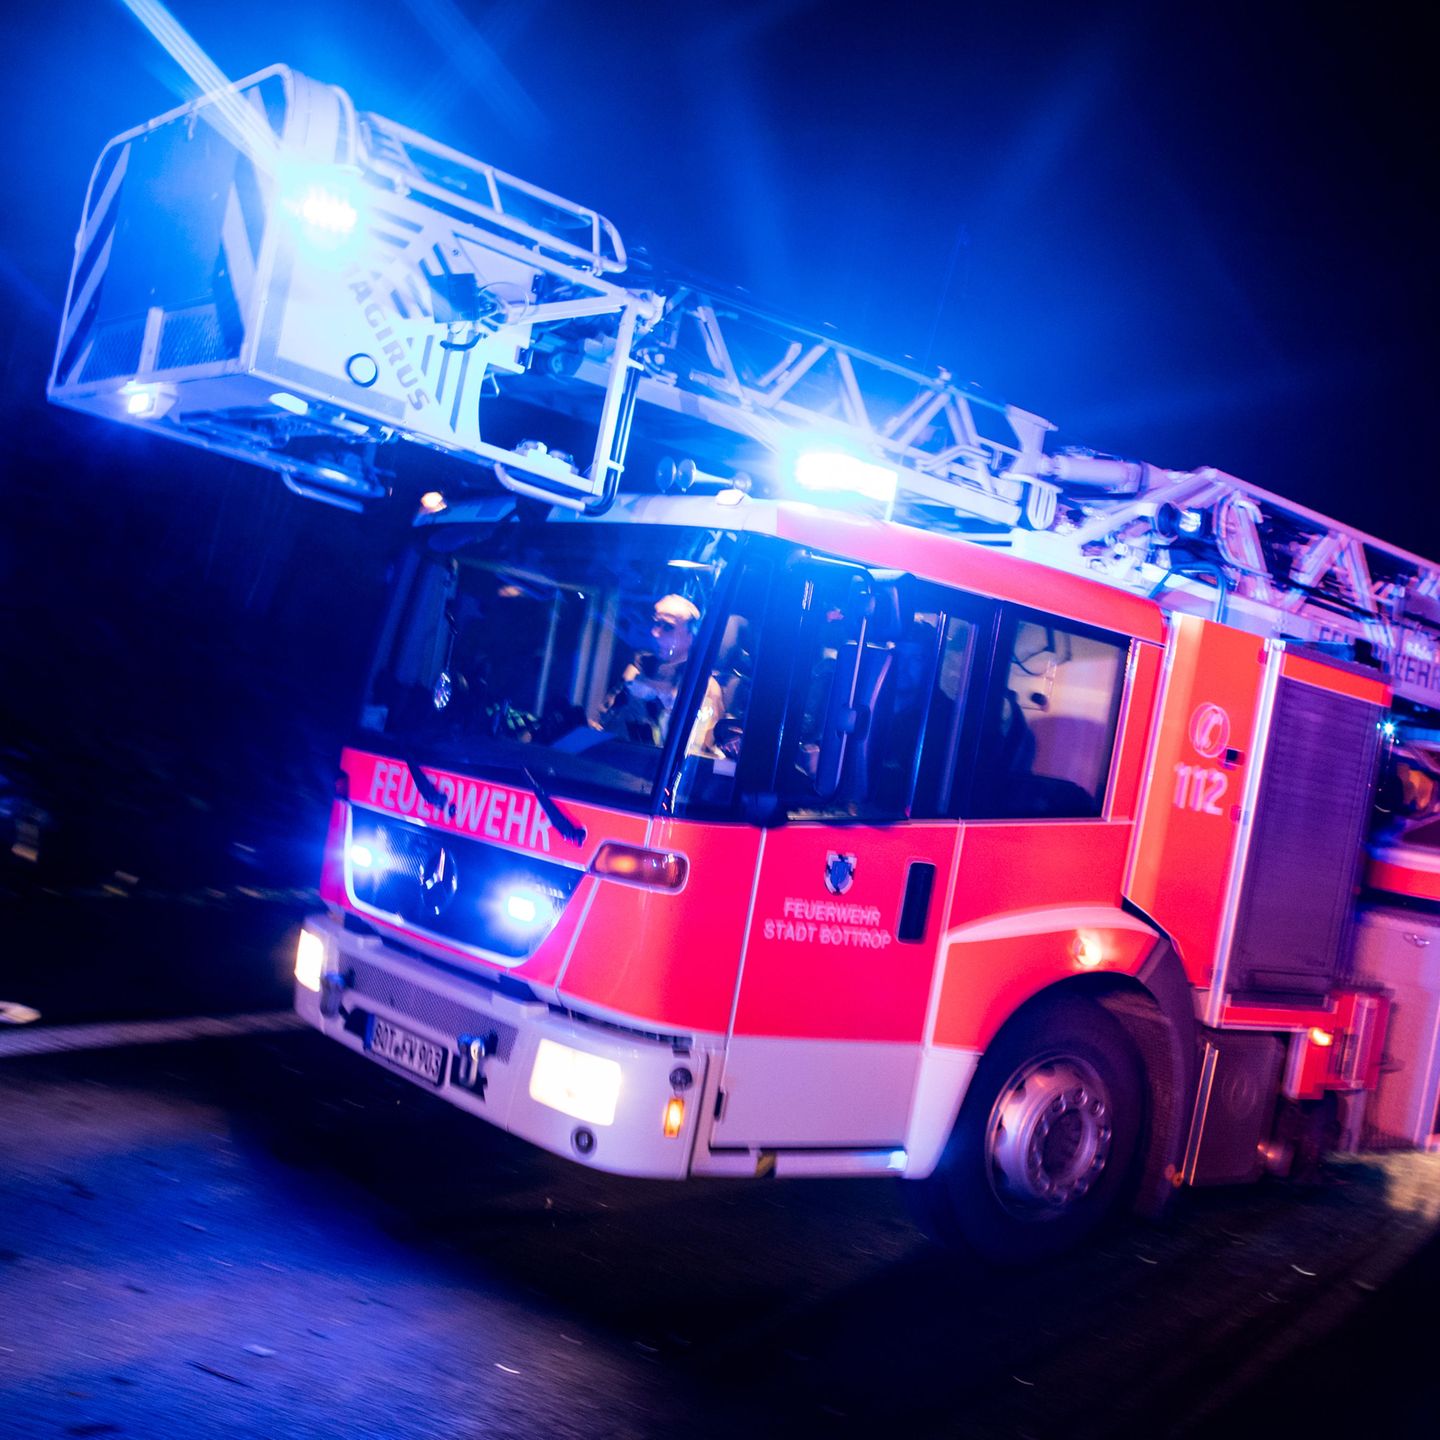 Vorsicht bei Blaulicht und Martinshorn / ADAC: Polizei, Feuerwehr